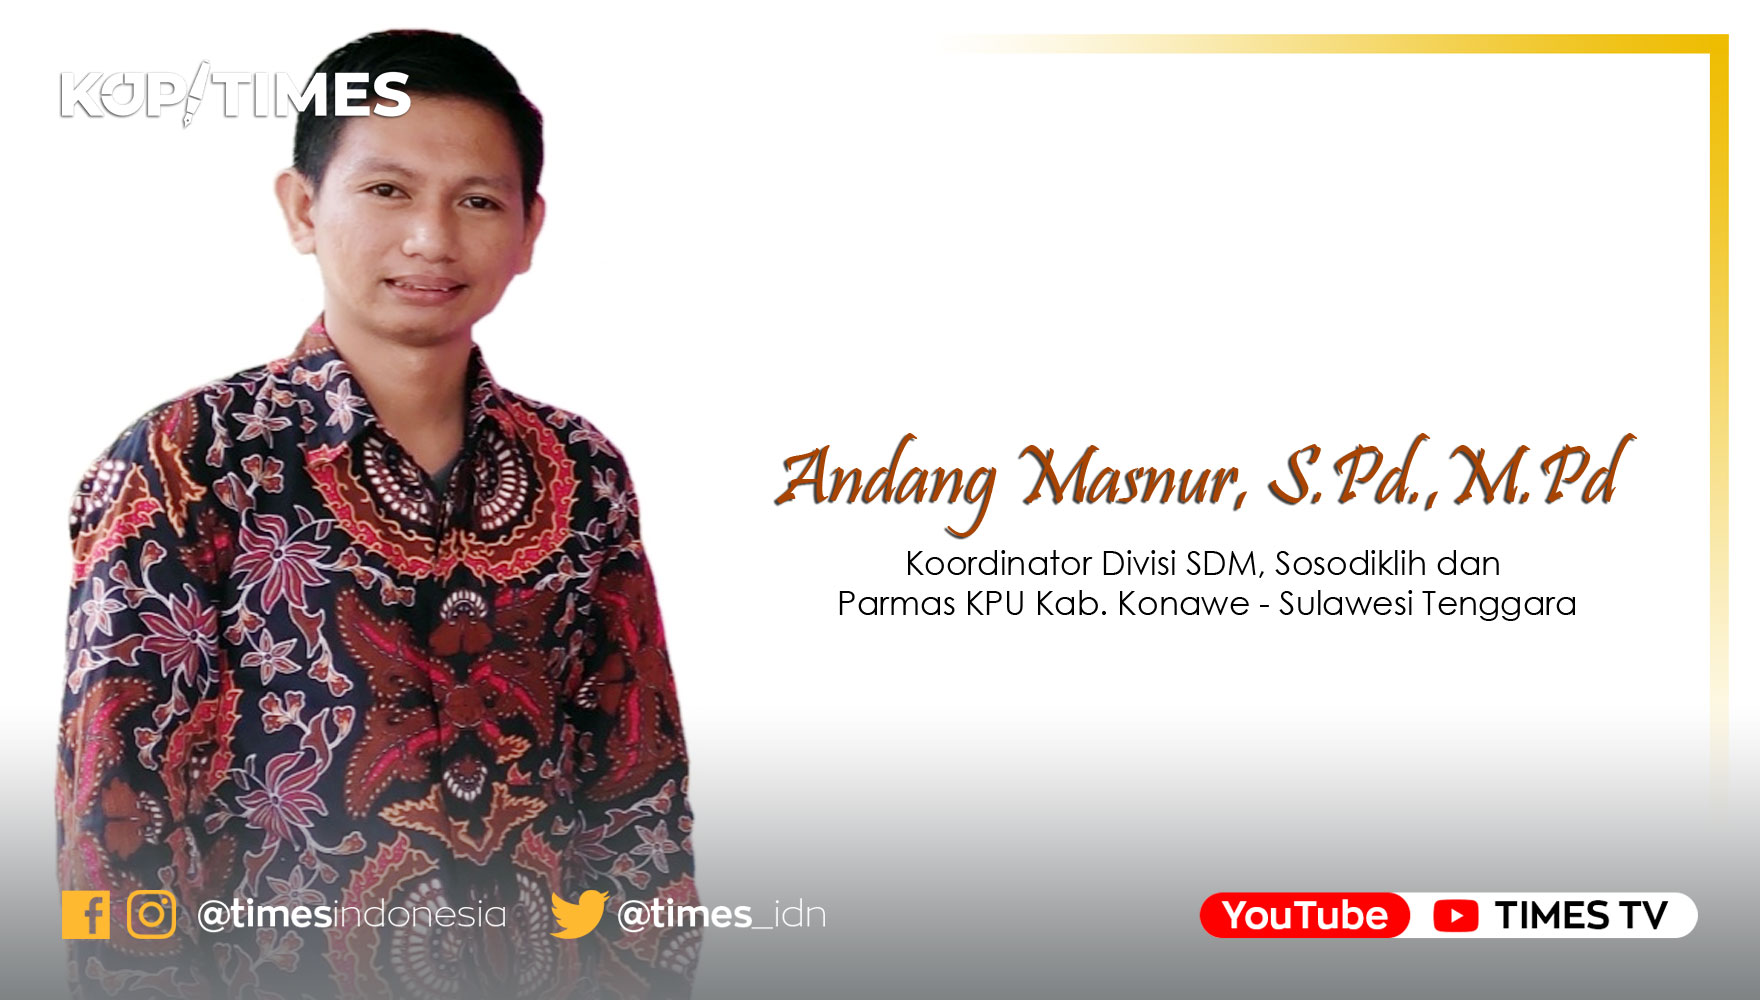 Andang Masnur, S.Pd.,M.Pd, Koordinator Divisi SDM, Sosodiklih dan Parmas KPU Kab. Konawe - Sulawesi Tenggara.